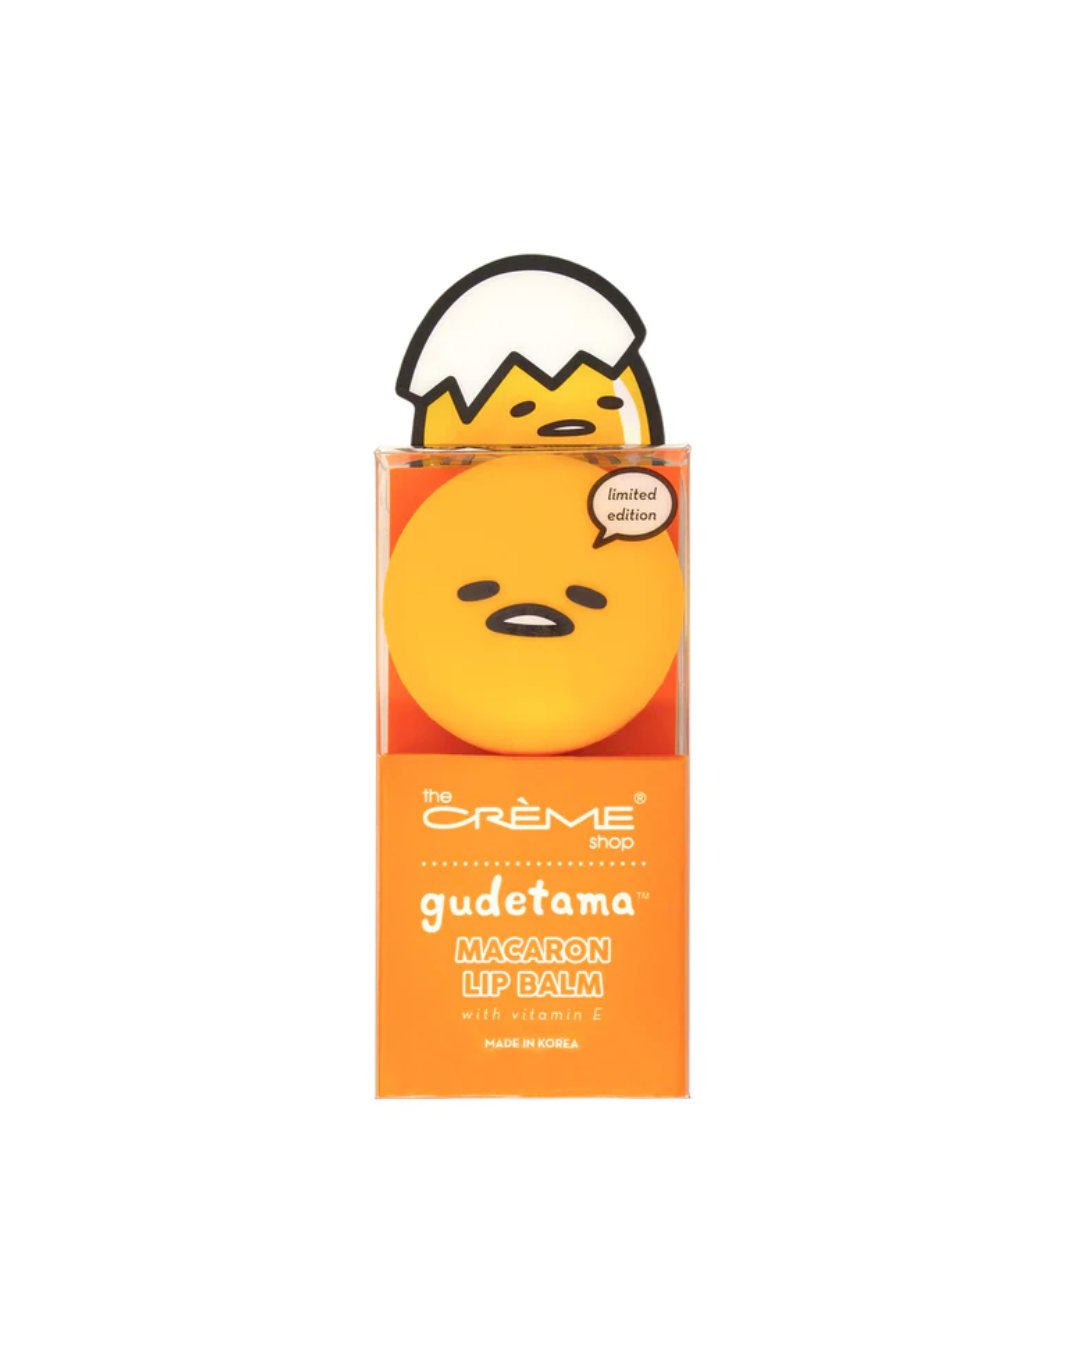 The Creme Shop x Sanrio Macaron Lip Balm